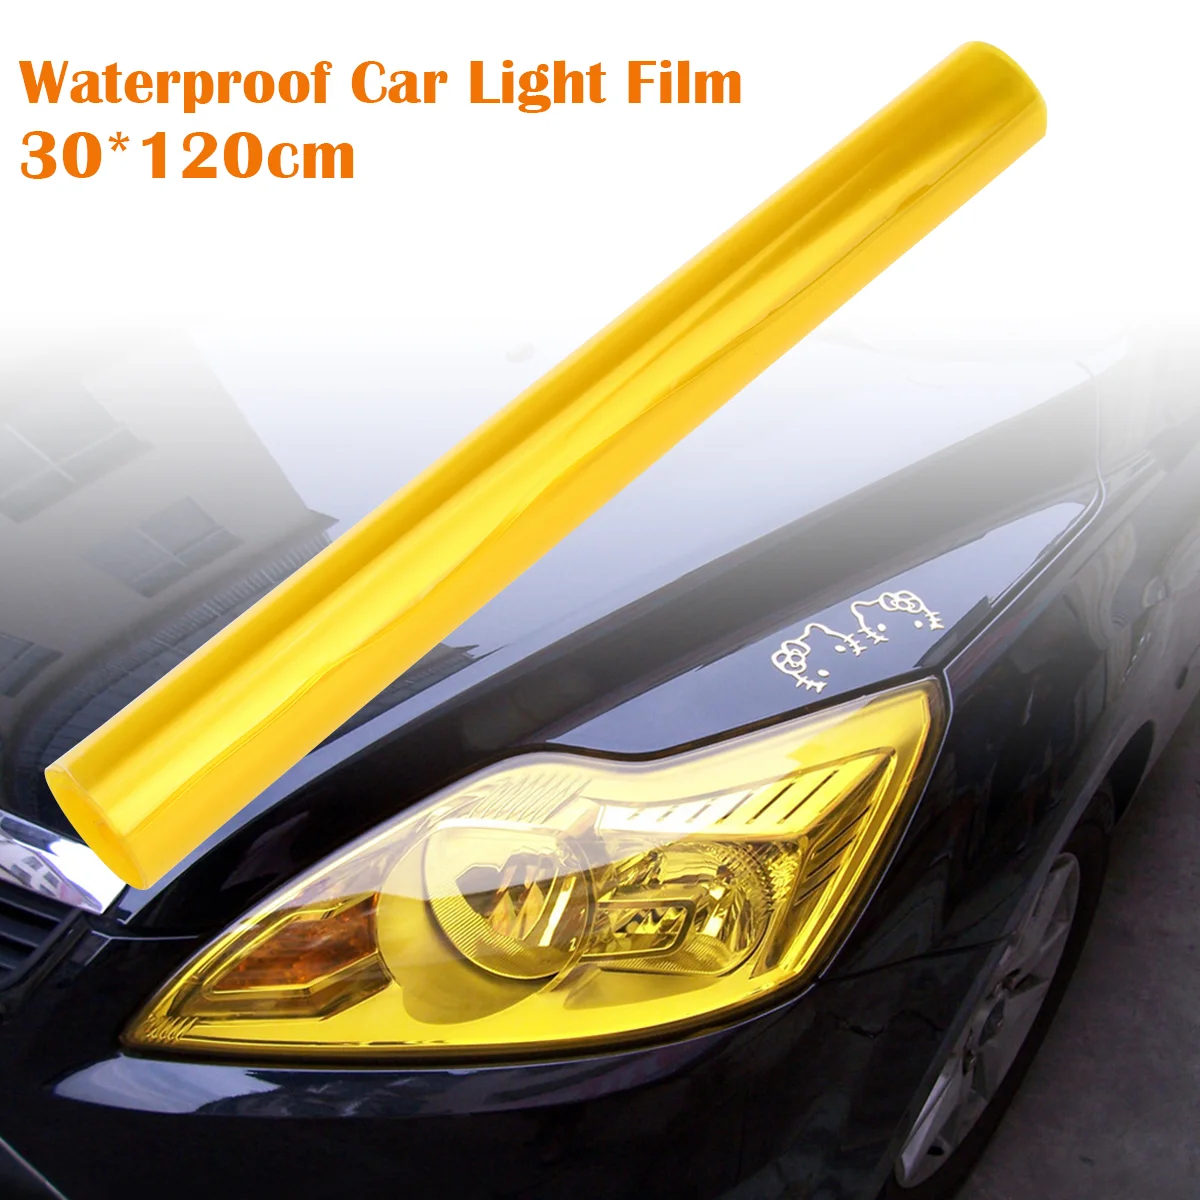 

Водонепроницаемая Автомобильная противотуманная лампа FOXNOVO 30*120 см, Тонировочная пленка для фар, меняющая цвет наклейка (желтый)